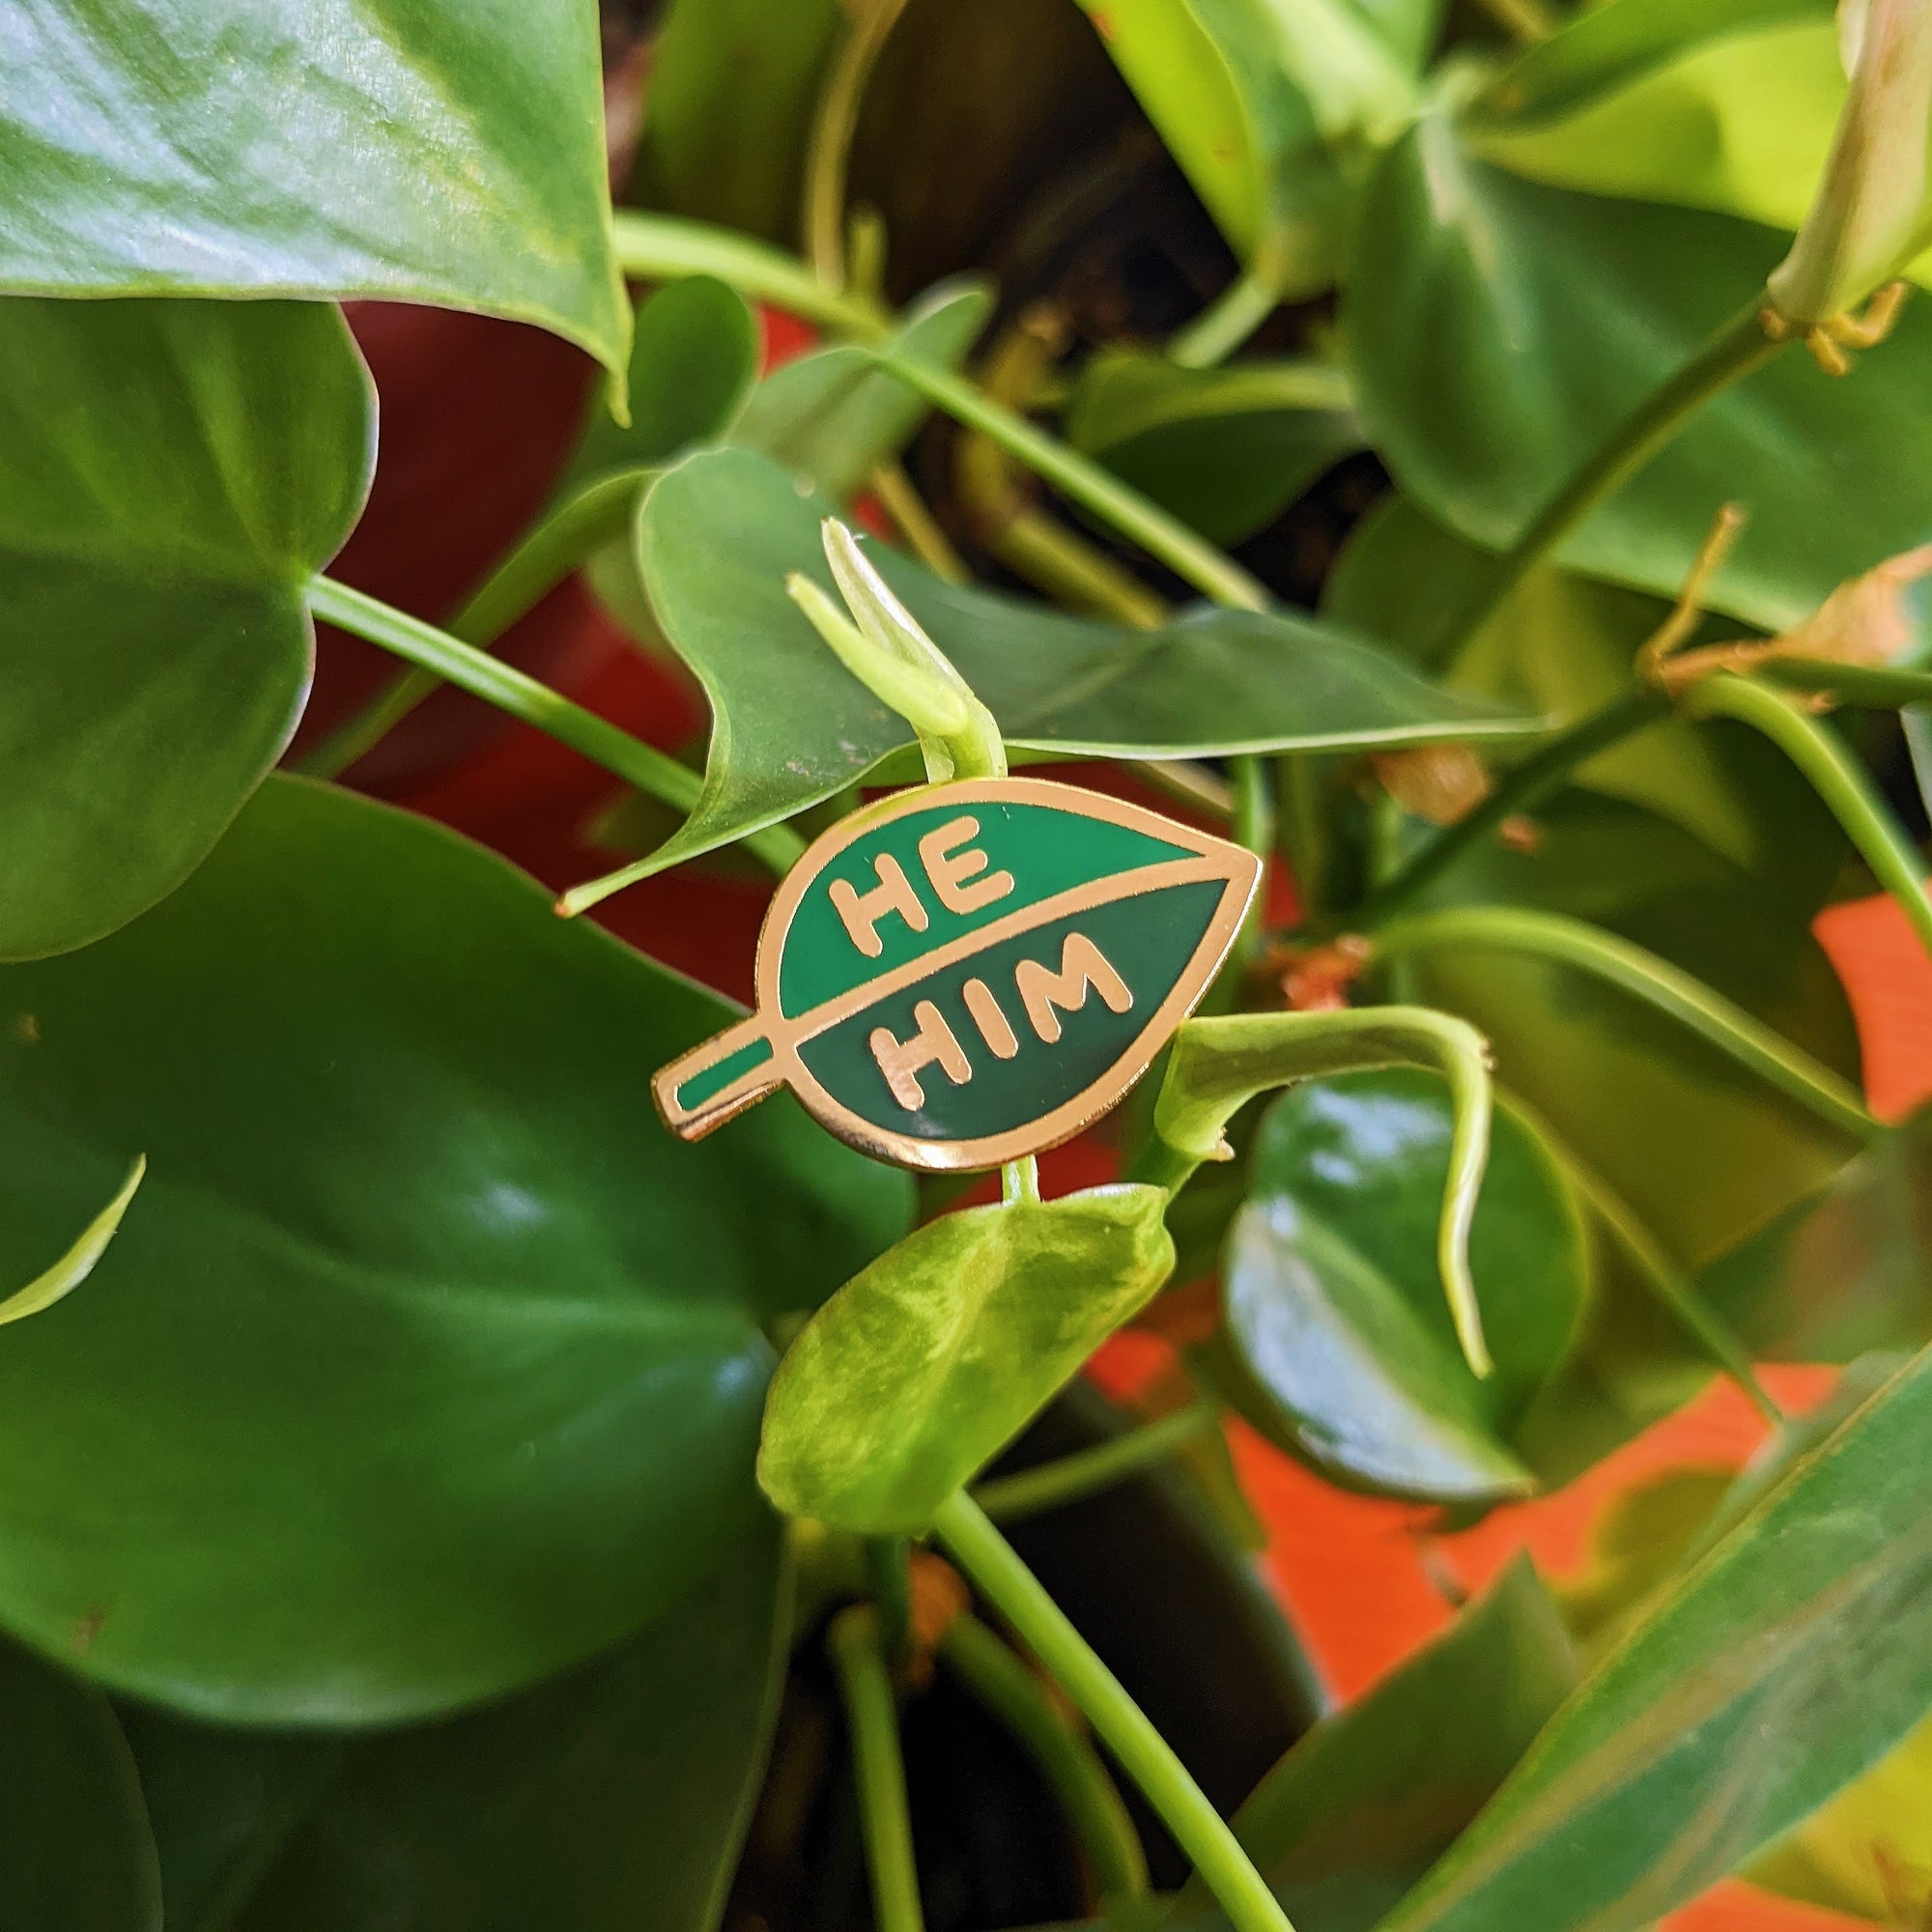 Pronoun Leaf Pin - he/him